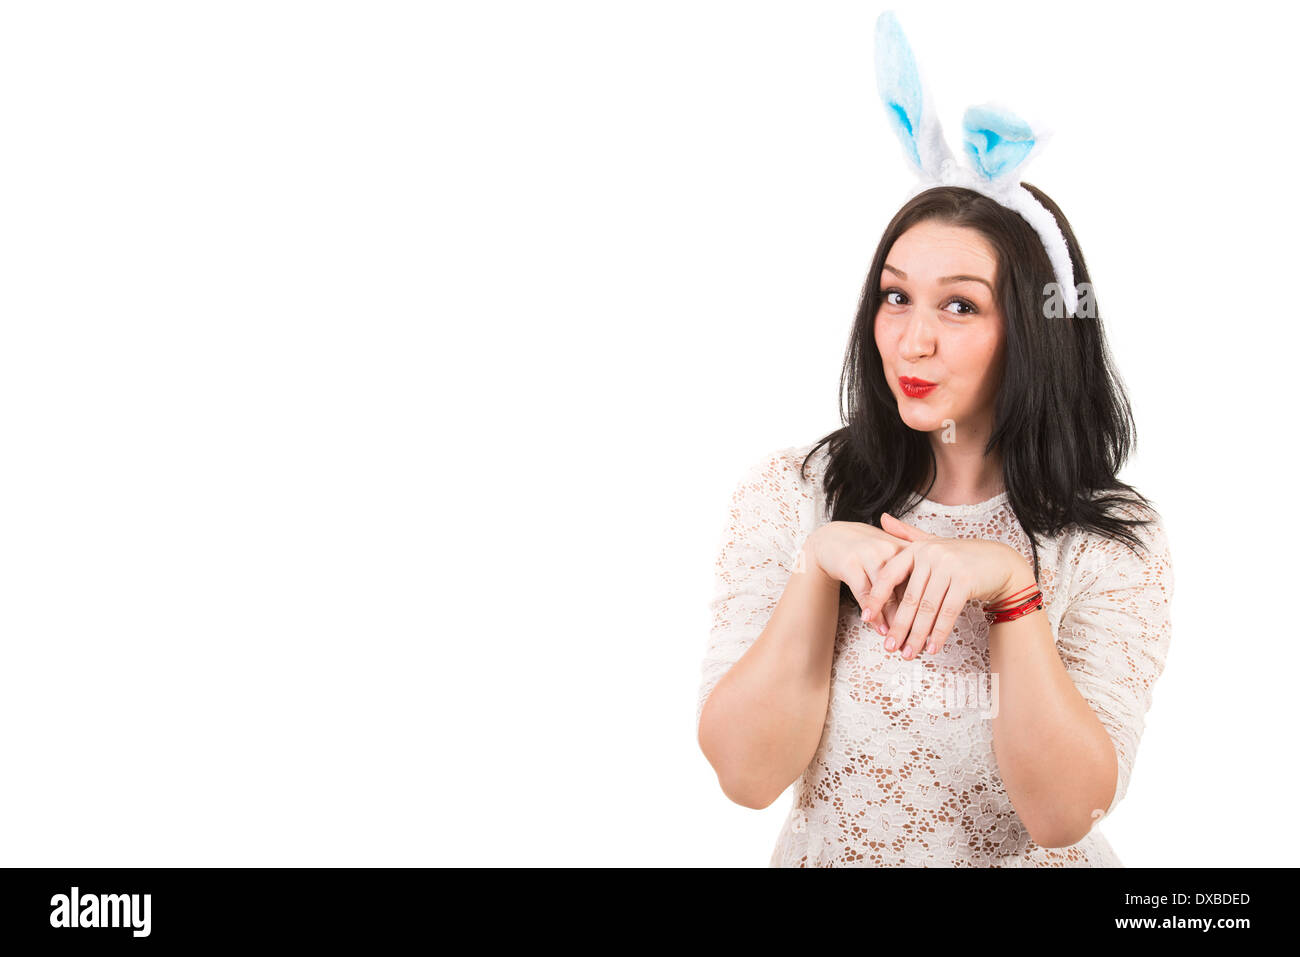 Femme drôle avec oreilles de lapin gesticuler isolé sur fond blanc,copie espace de message texte dans la partie gauche de l'image Banque D'Images